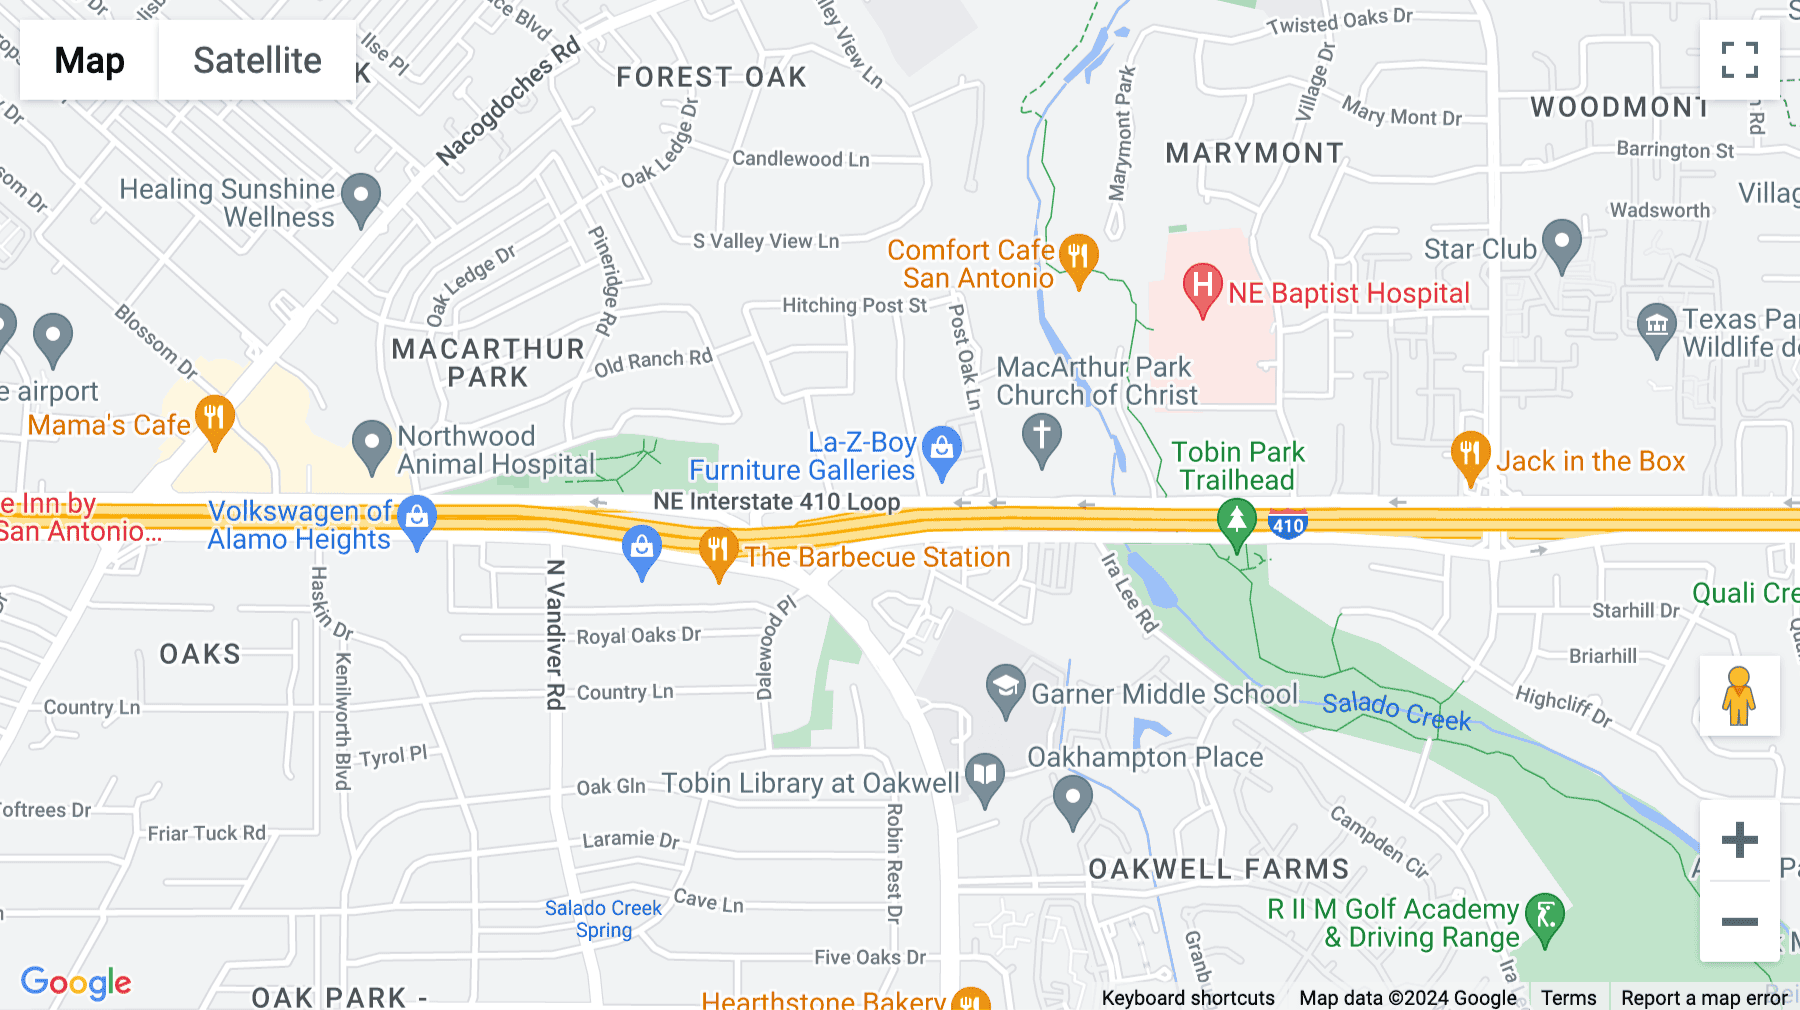 Click for interative map of 1777 NE Loop 410, Suite 600, Airport Area Centre, San Antonio, Texas, San Antonio